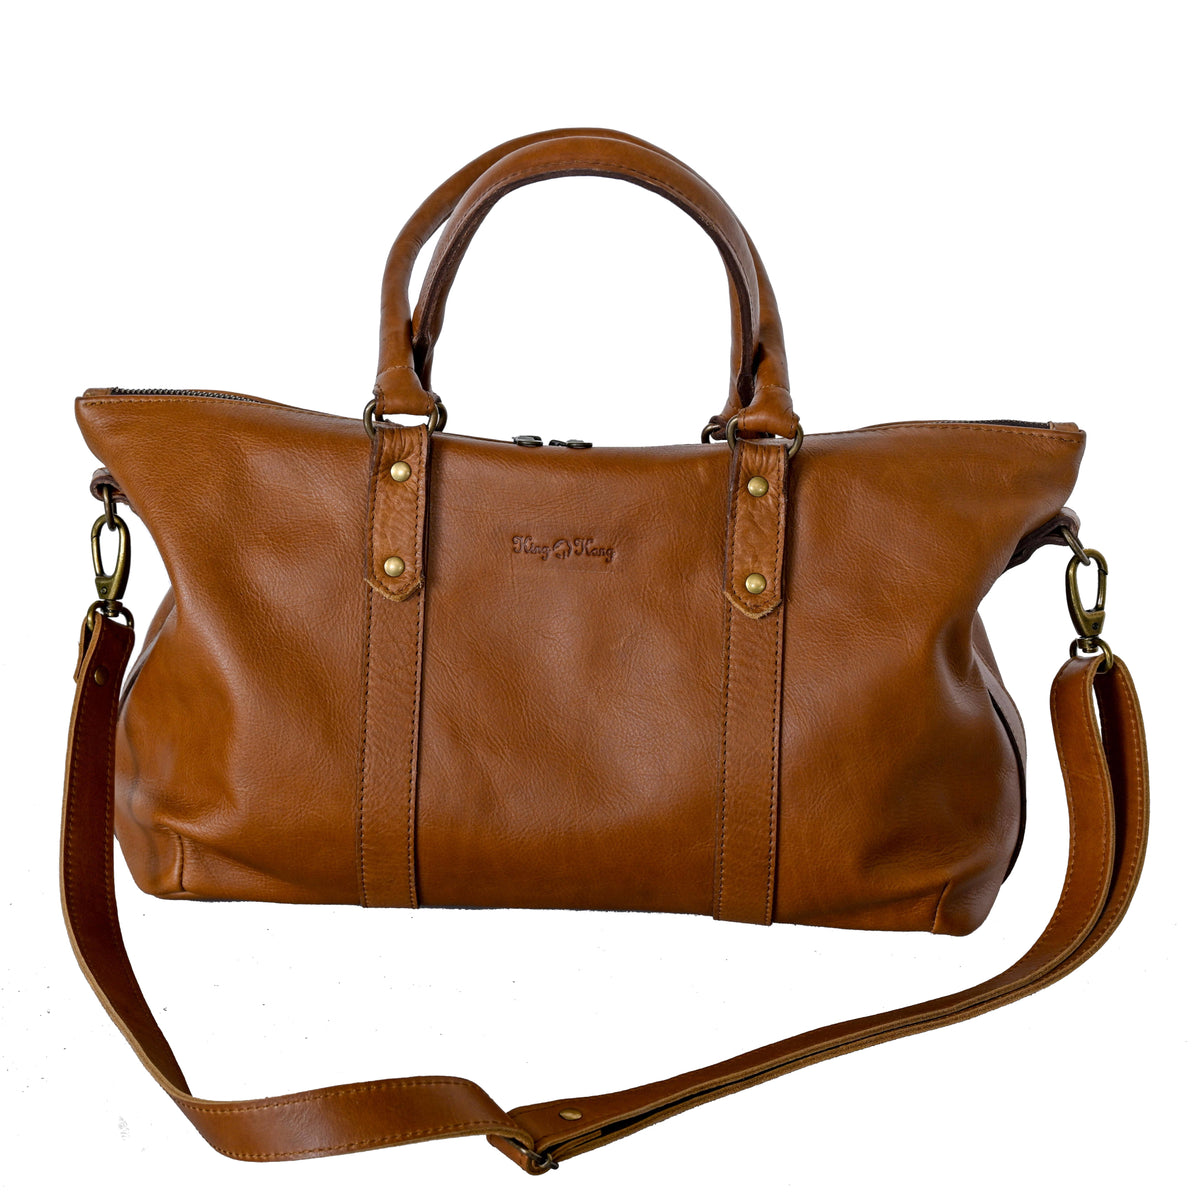 Monalisa Leather Shoulder Handbag with Sling